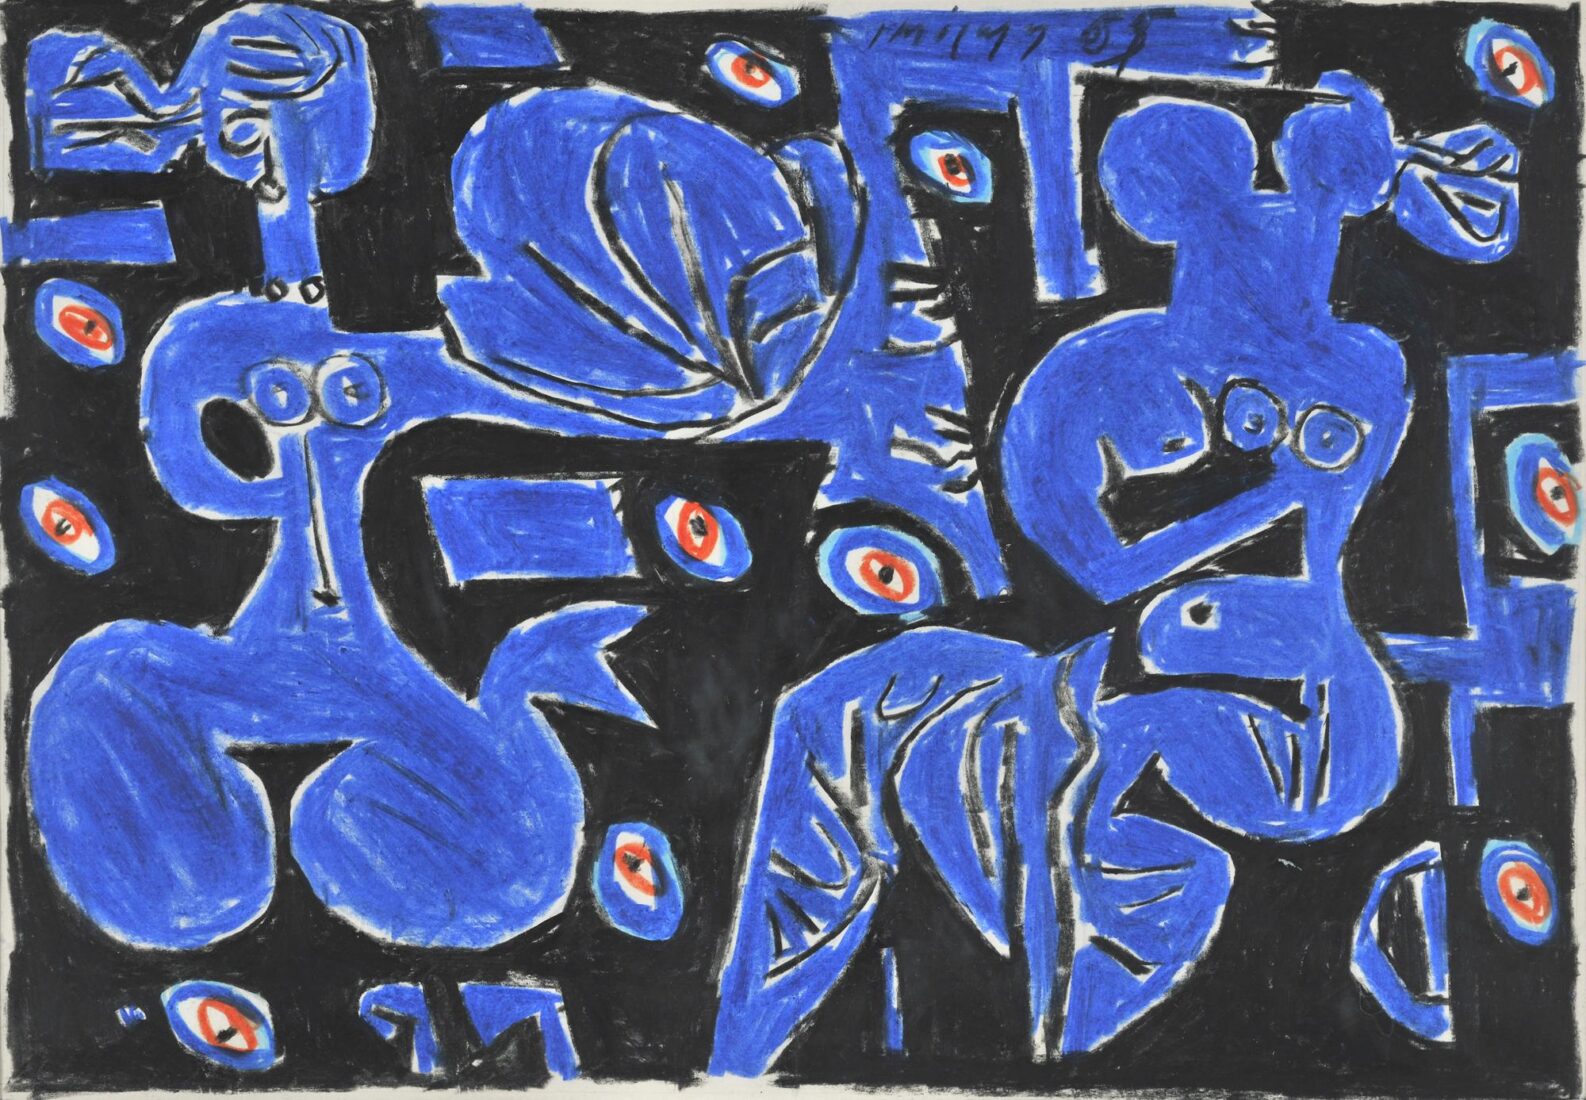 Ζωγραφική σύνθεση-σχόλιο για τη συλλογή Ποιήματα του Γιώργου Σεφέρη (εκδόσεις Ίκαρος, 1965) - Μόραλης Γιάννης